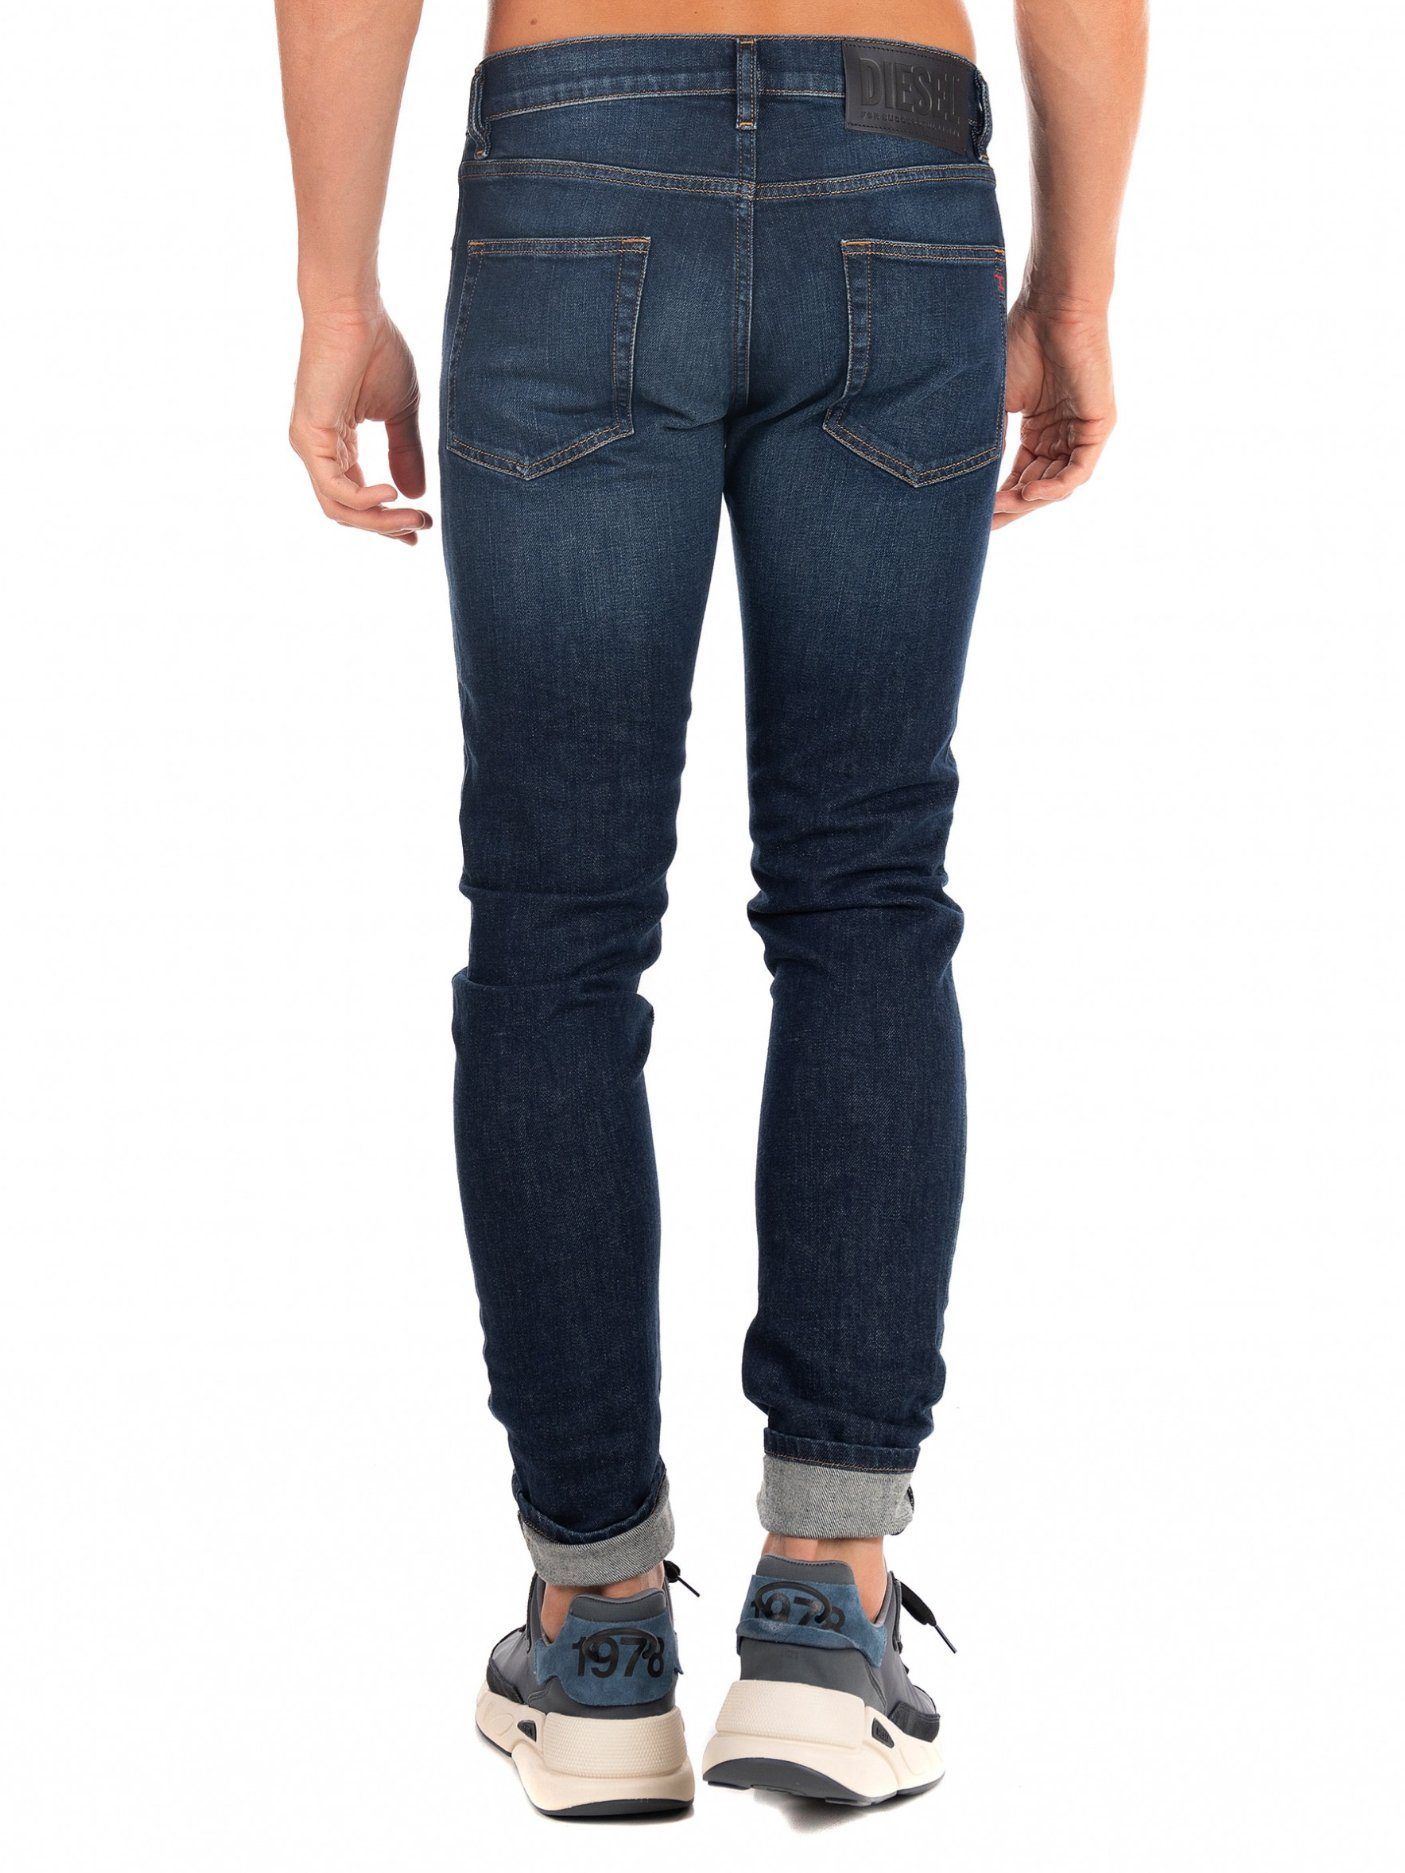 Dunkel Hose Slim-fit-Jeans Stretch 009HN Blau - D-Strukt Diesel